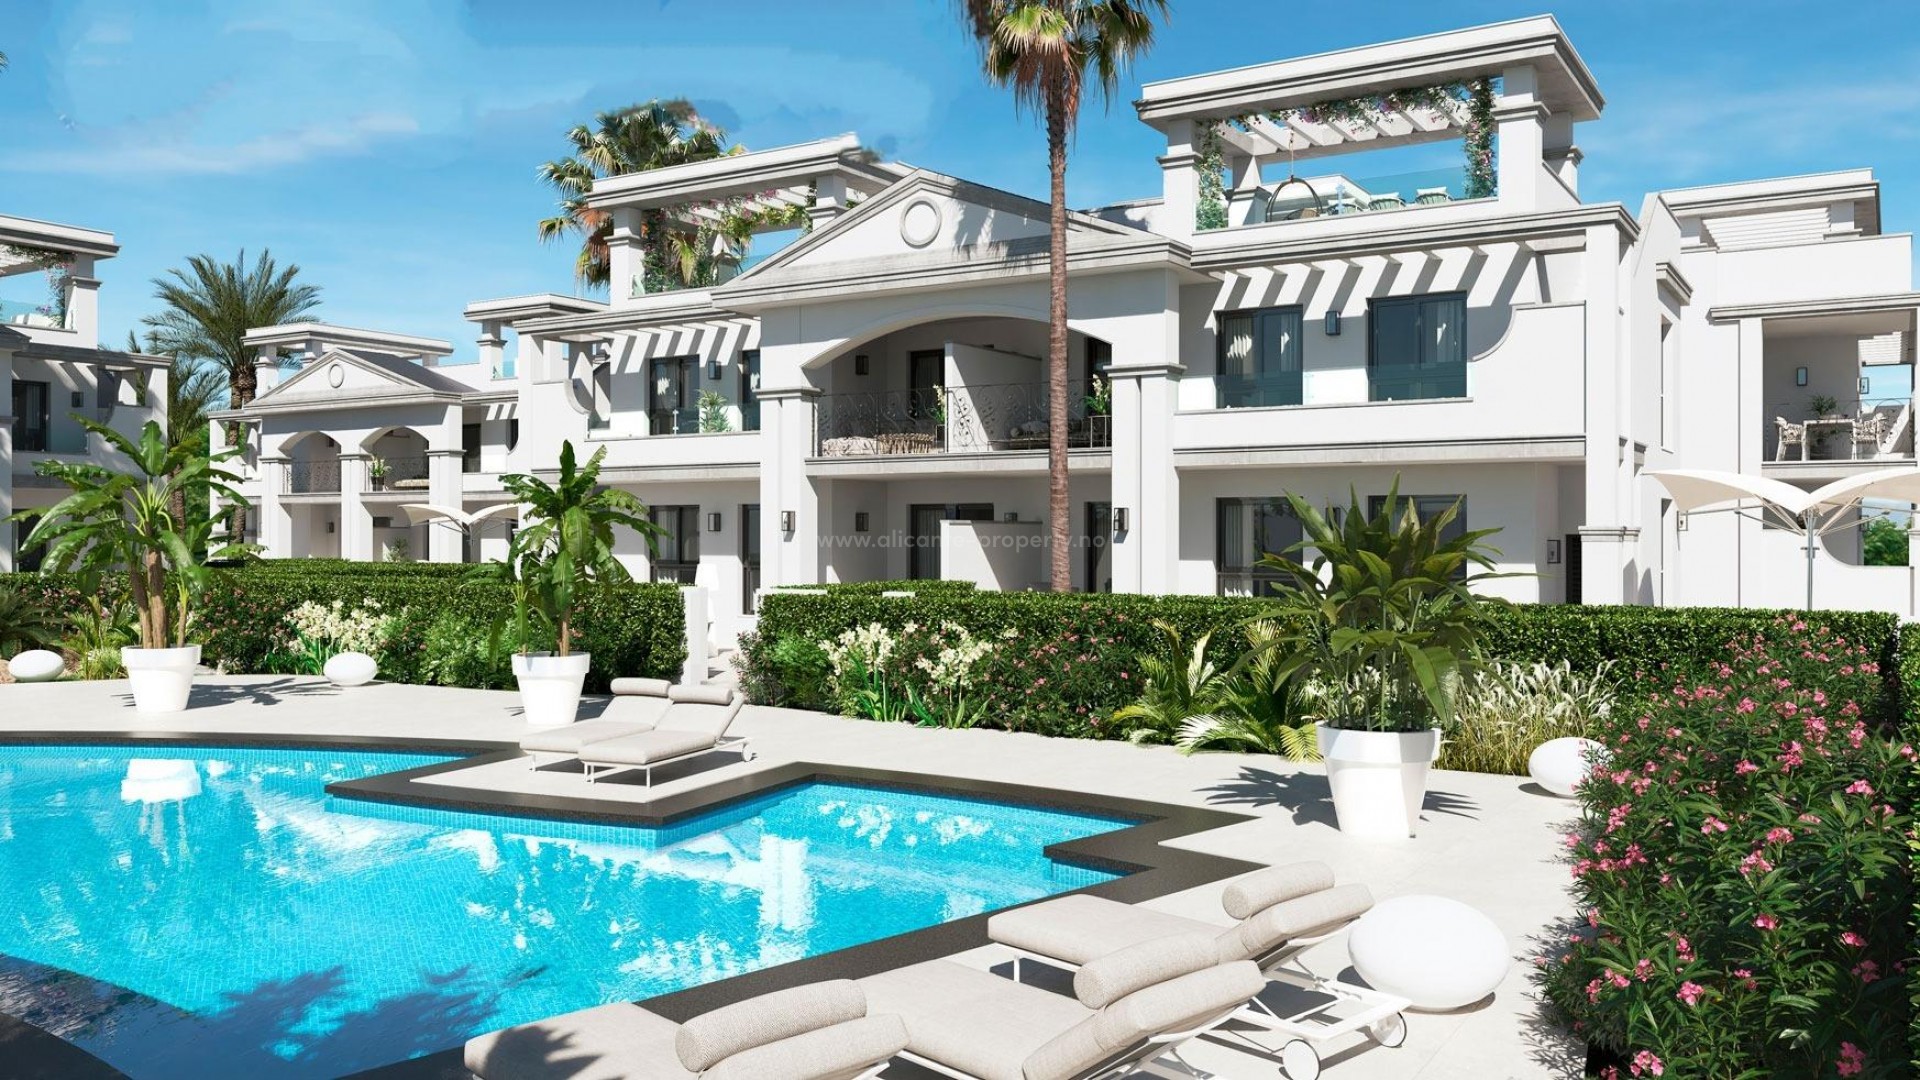 Luksus-leiligheter og bungalows i Ciudad Quesada, Alicante,  3/4 soverom, takterrasse. Grønne områder med svømmebasseng, privat parkering